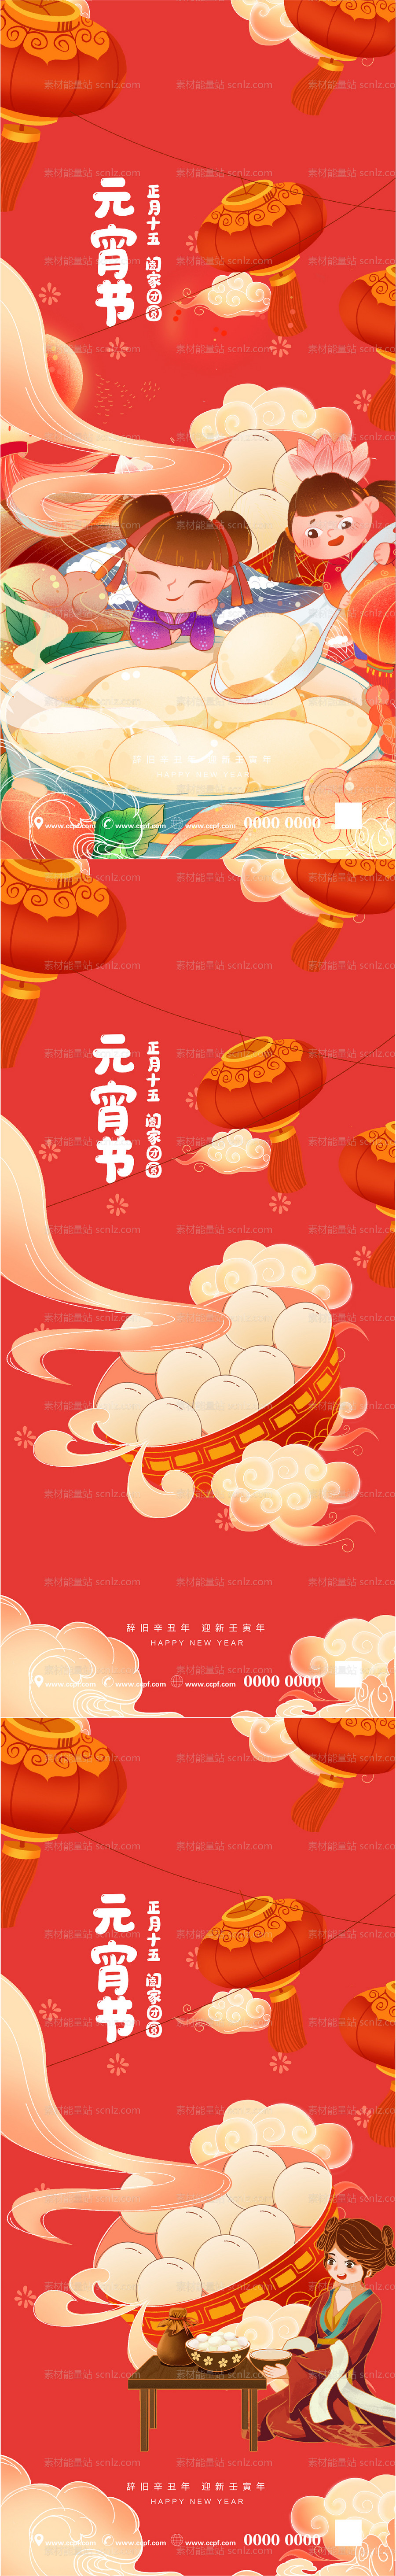 素材能量站-新年元宵节系列海报